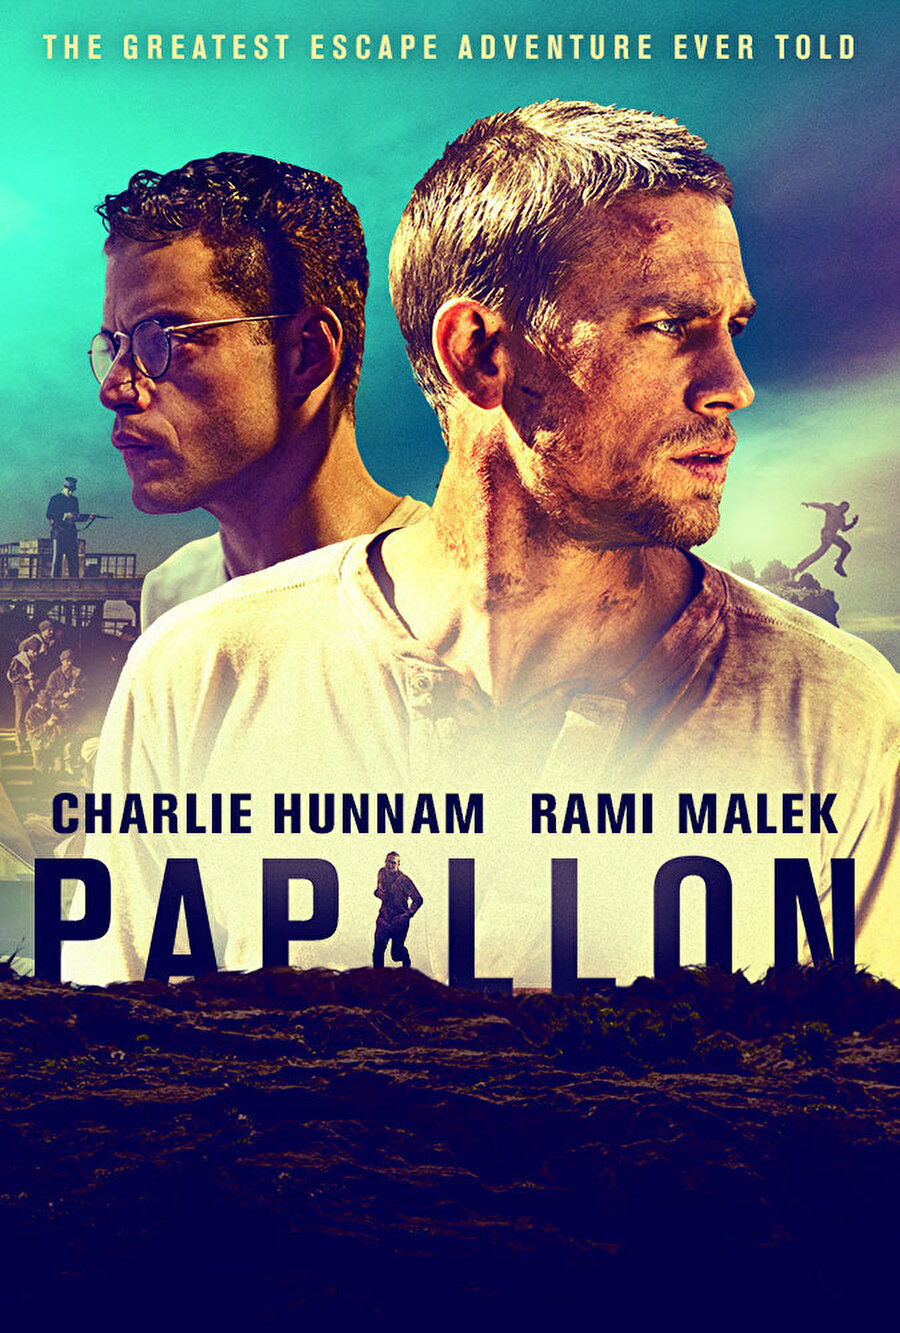 2. Papillon
Başrollerinde Steve McQueen ve Dustin Hoffman'ın yer aldığı 1973 yapımlı "Papillon"un yeniden uyarlaması aynı adlı filmde, bu kez başrolleri Charlie Hunnam ve Rami Malek paylaşıyor.Gerçek bir hayat hikayesine dayanan "Papillon", suçsuz olduğu halde mahkum edilen Henri Papillon Charriere ve yüksek güvenlikli hapishanede tanıştığı banker Louis Dega'nın kaçış üzerinden başlayan dostluğu ve firarın imkansız olduğu bu hapishaneden kurtulma çabalarını anlatıyor.